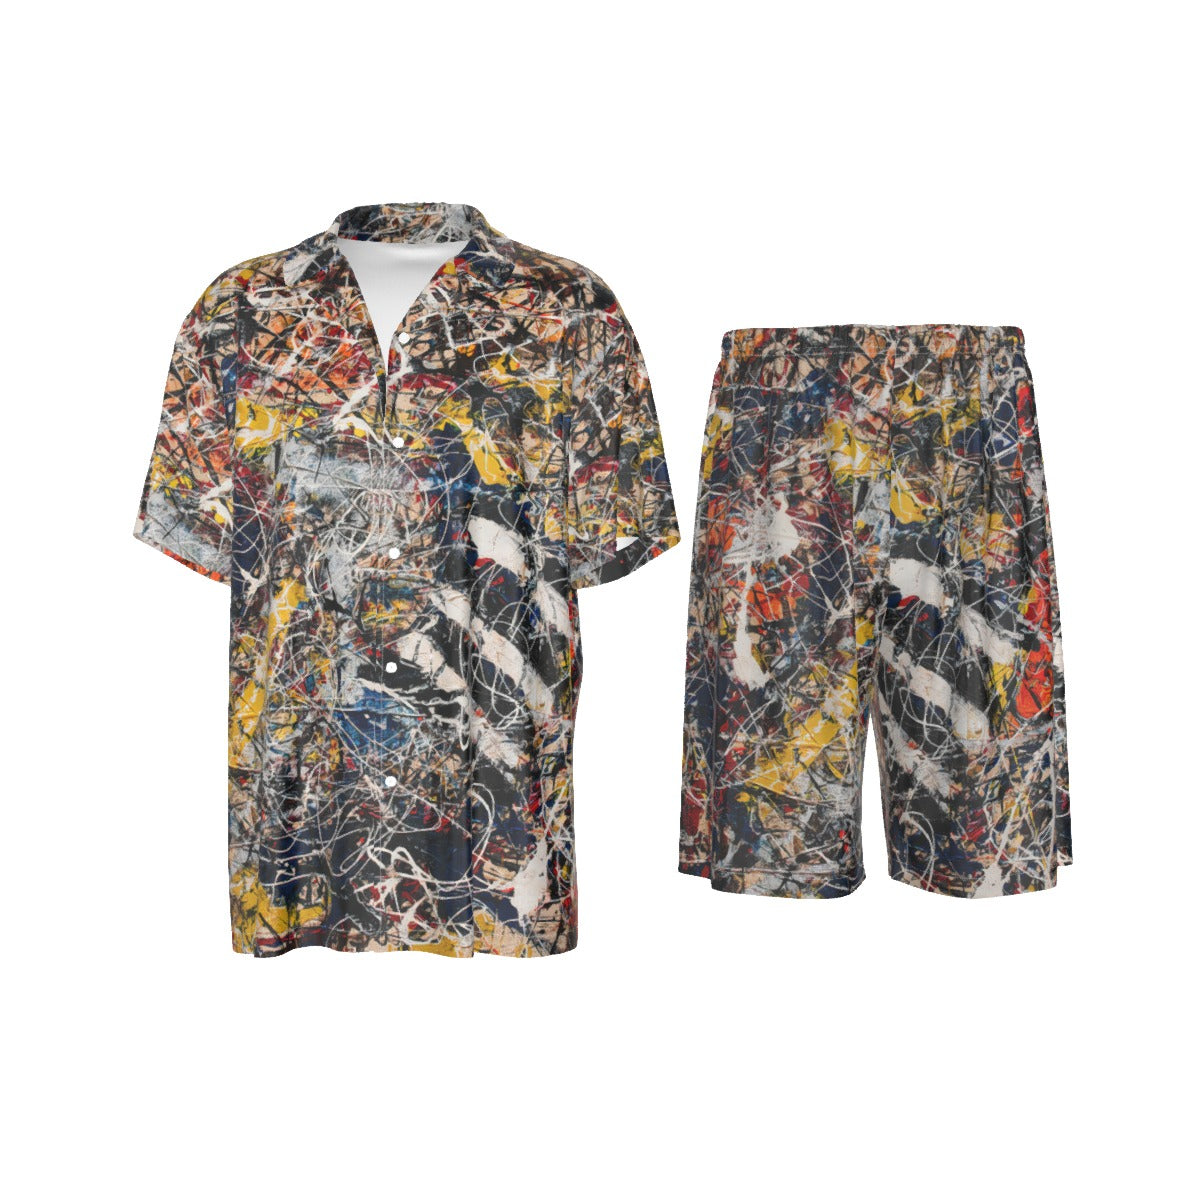 Jackson Pollock Silk Shirt Suit - Abstract Art Fashion